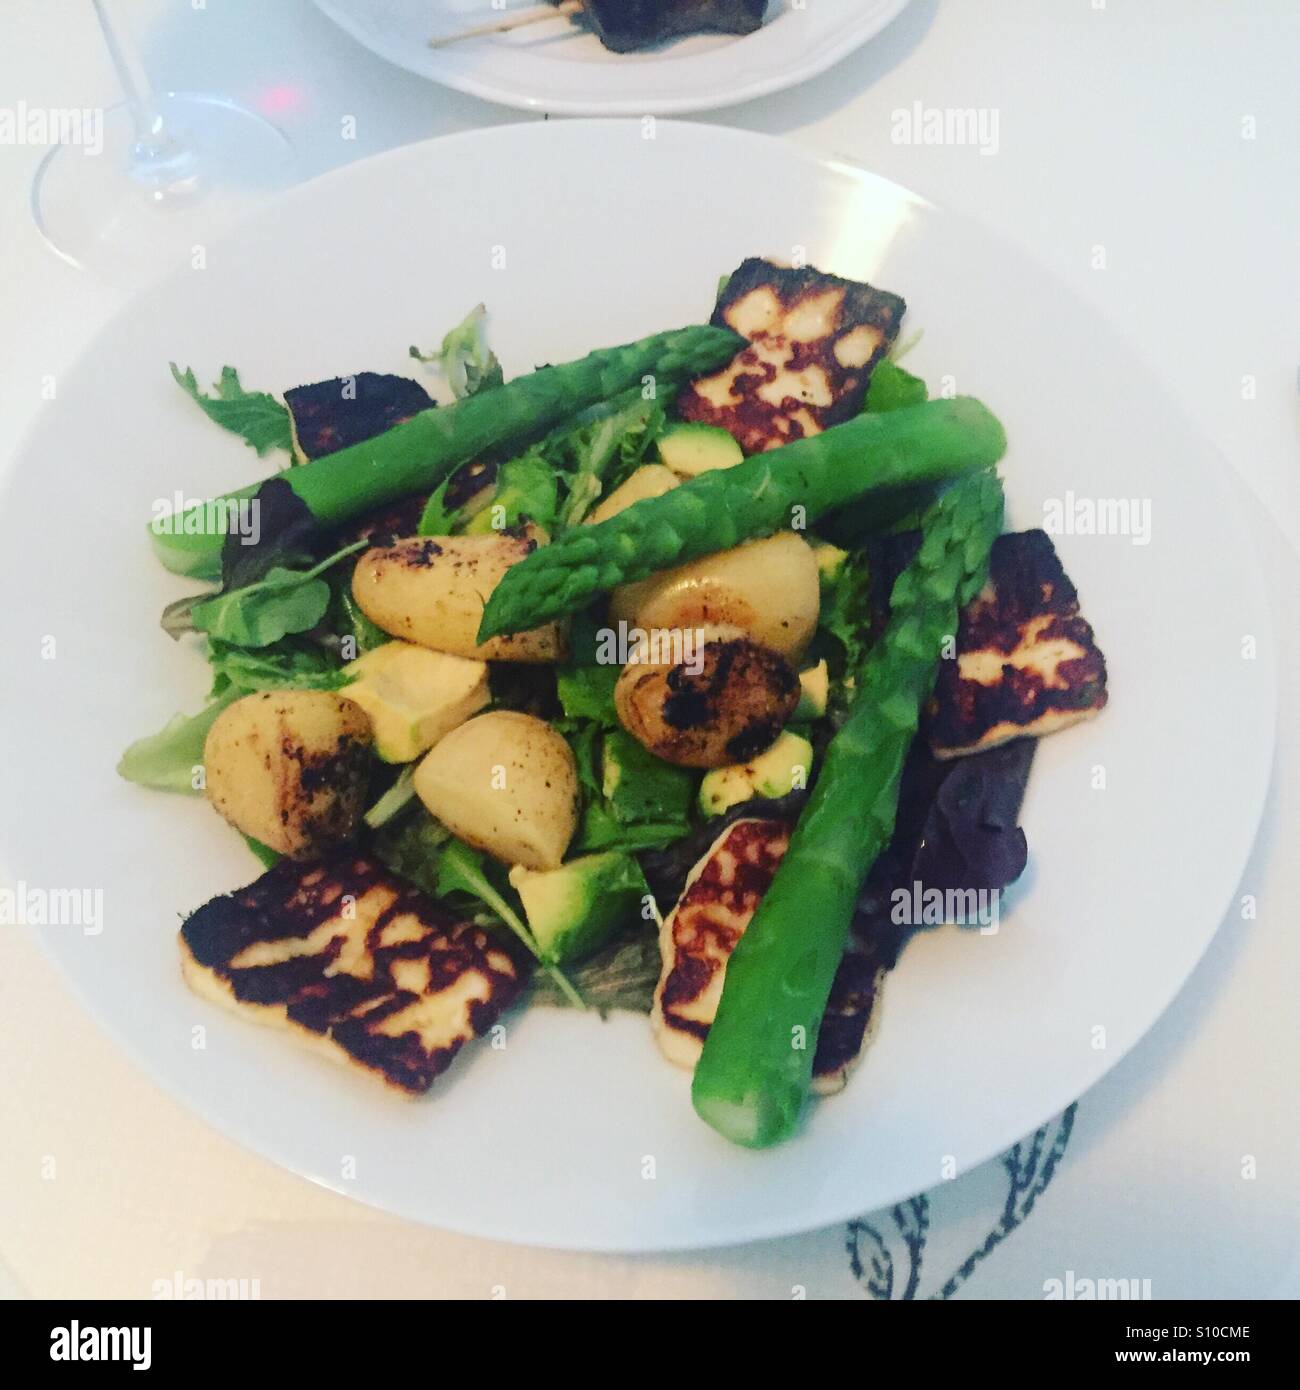 Summer Halloumi and asparagus salad Stock Photo